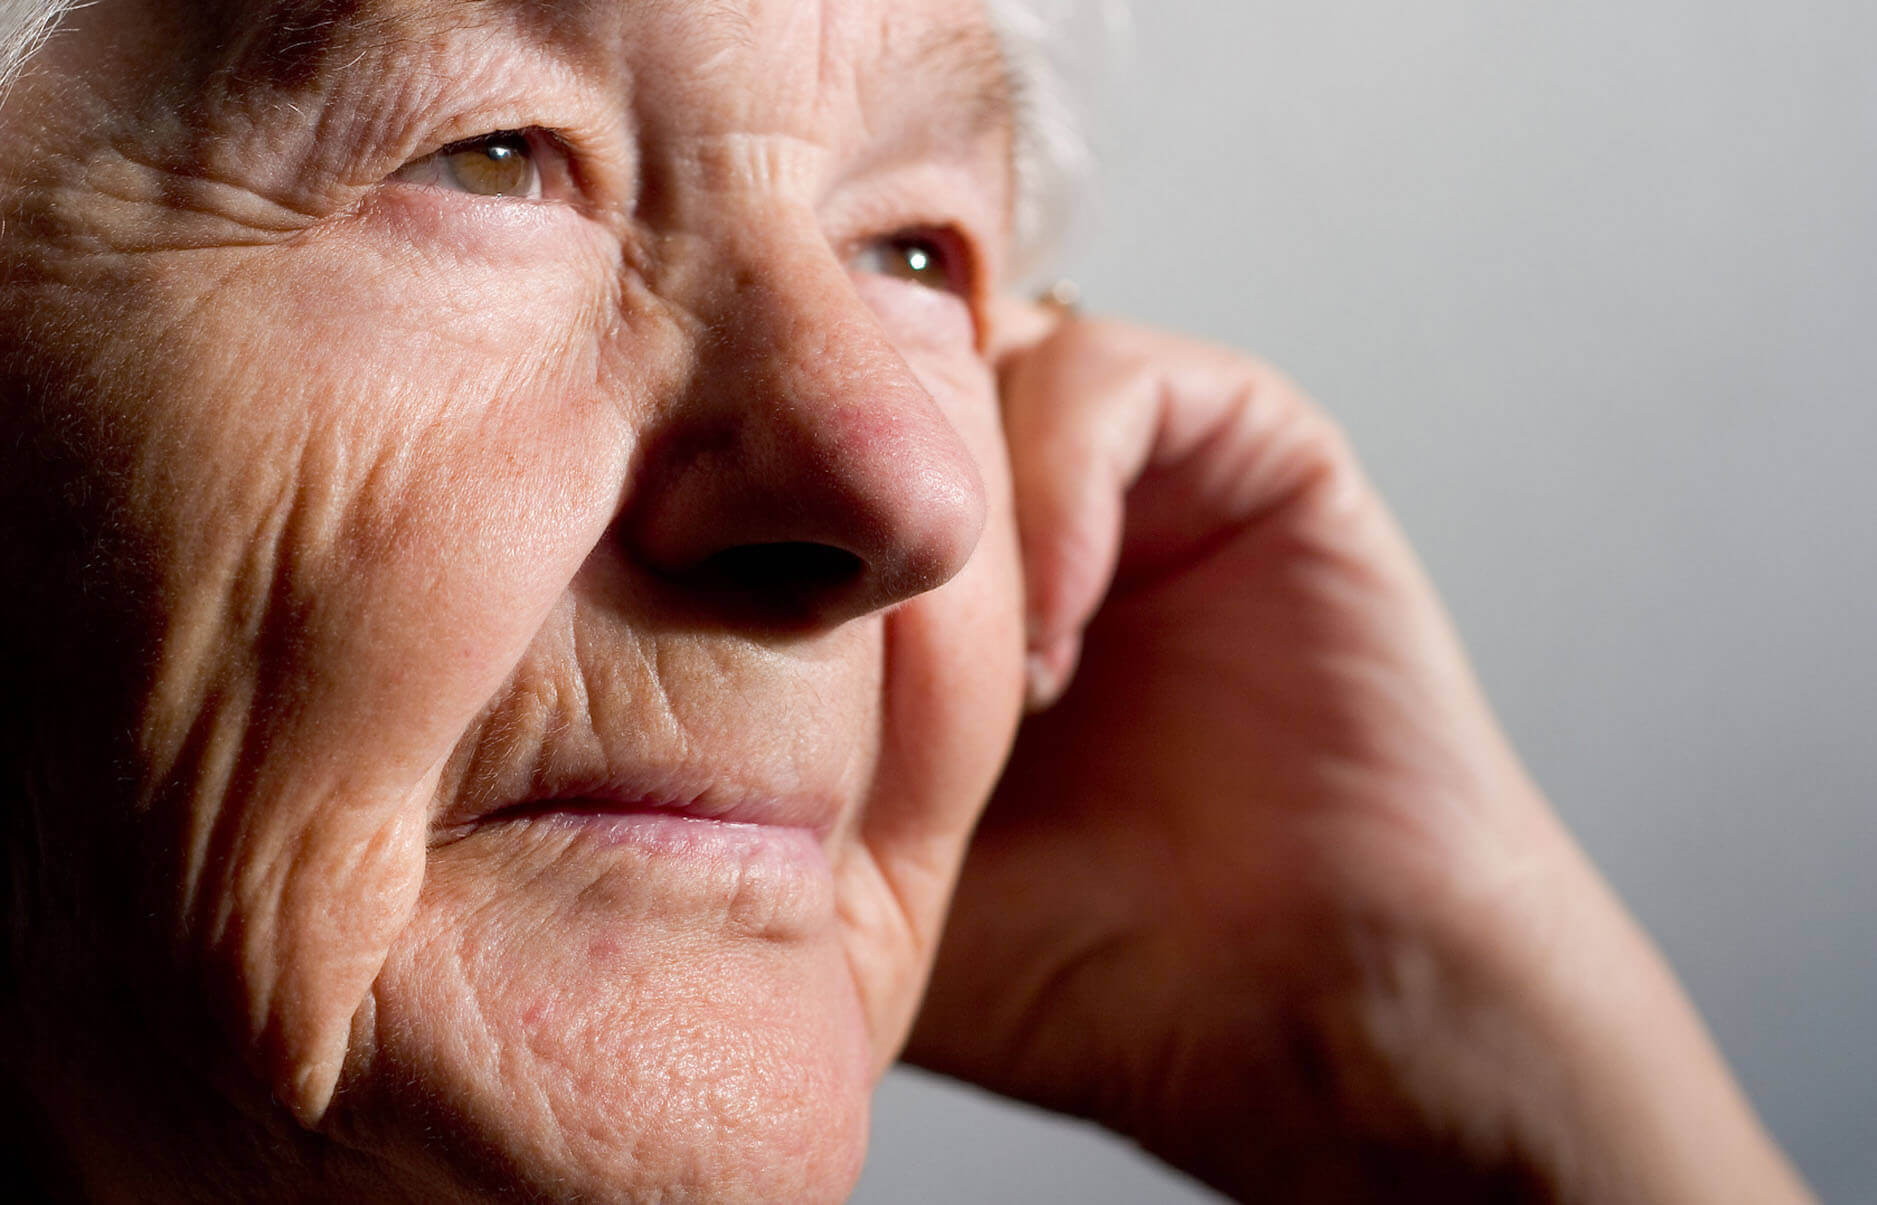 Problemy psychologiczne i społeczne dotykające osób starszych